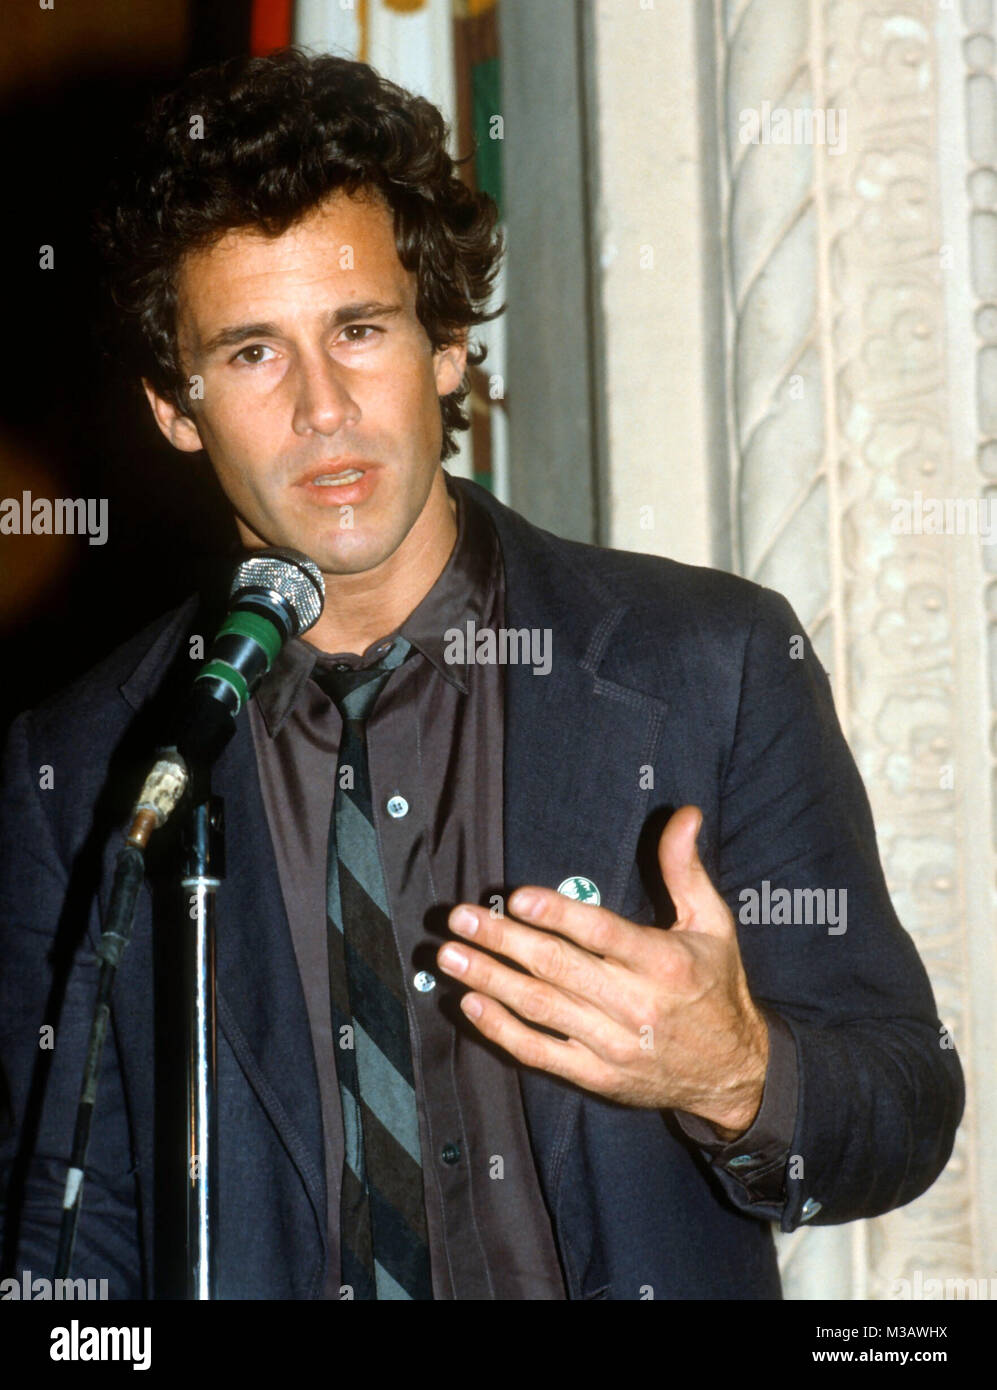 LOS ANGELES, CA - 18 ottobre: attore Michael Ontkean assiste nucleare beneficio di congelamento a Wilshire Ebell Theatre, il 18 ottobre 1982 a Los Angeles, California. Foto di Barry re/Alamy Stock Photo Foto Stock